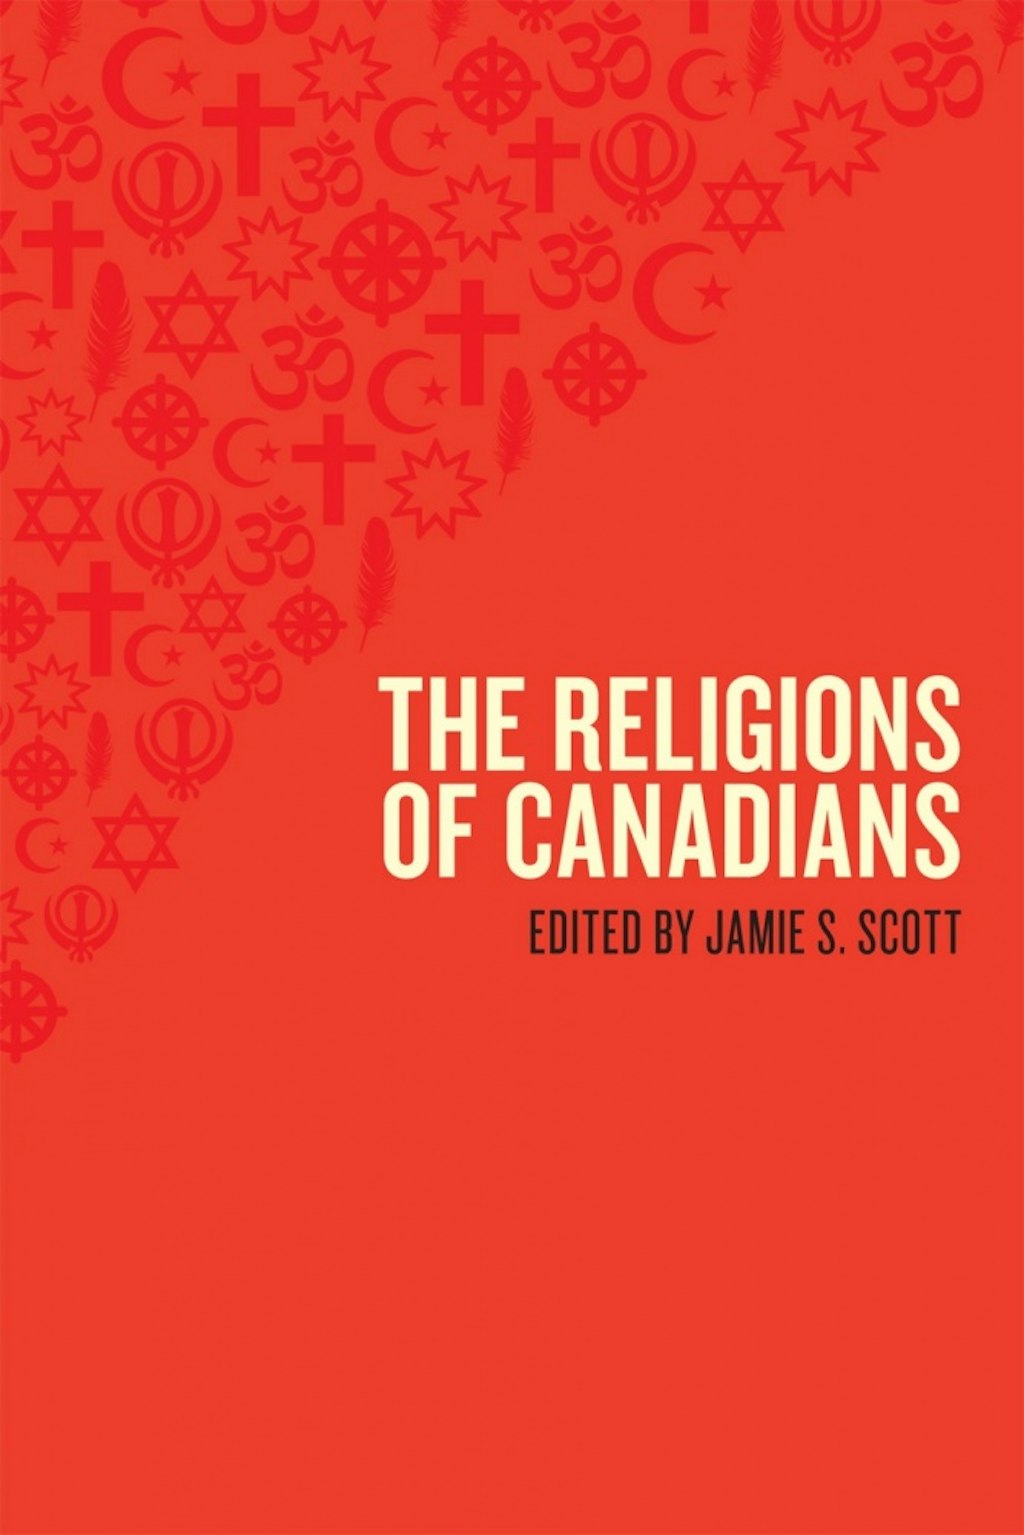 Un nouveau livre sur les religions au Canada comporte un chapitre sur l’expérience bahá’íe